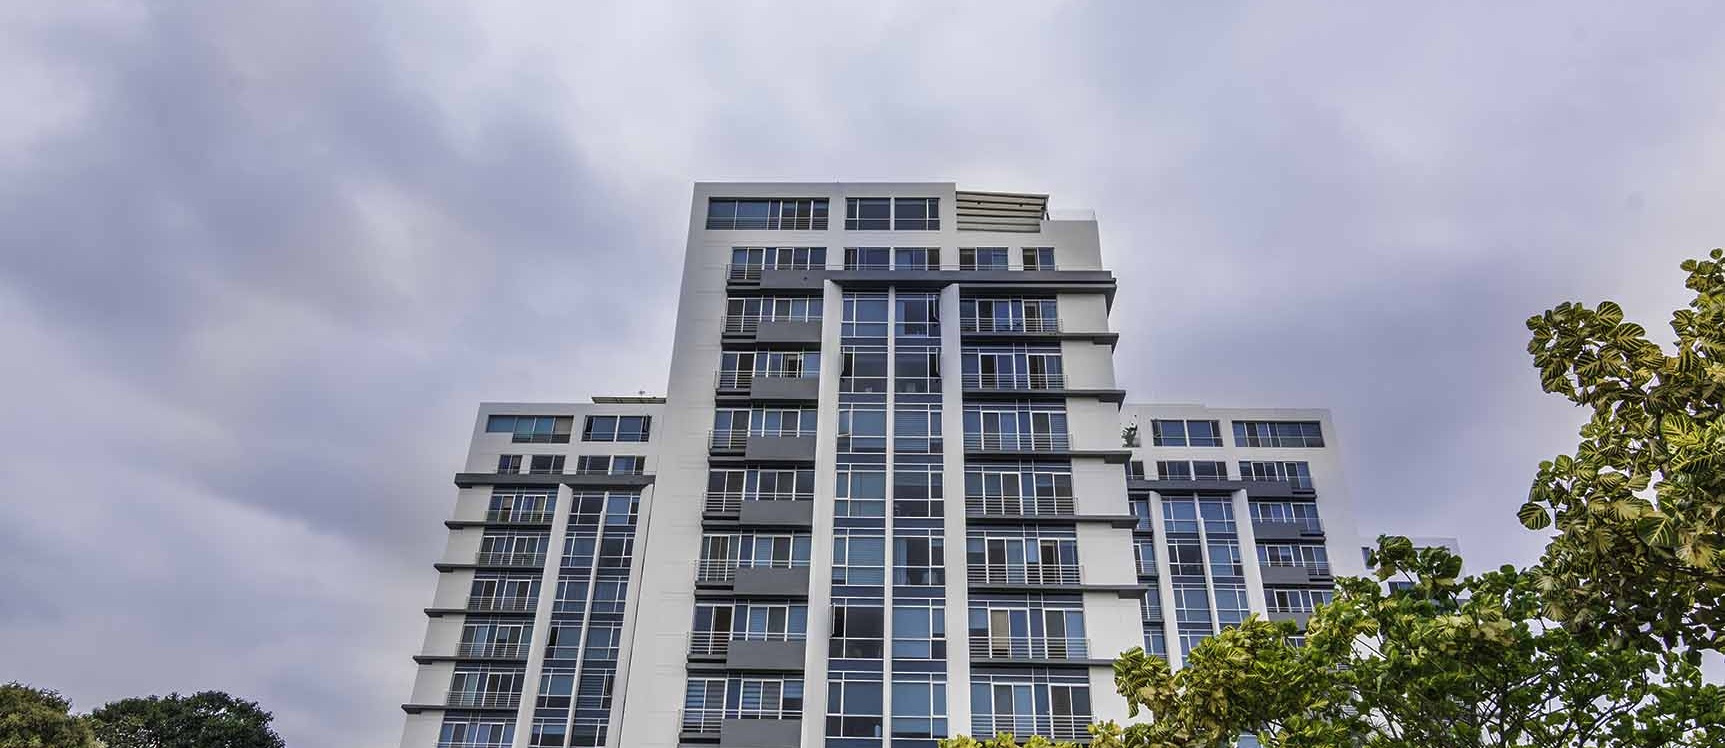 GeoBienes - Departamento penthouse en venta en River Tower vía a Samborondón - Plusvalia Guayaquil Casas de venta y alquiler Inmobiliaria Ecuador